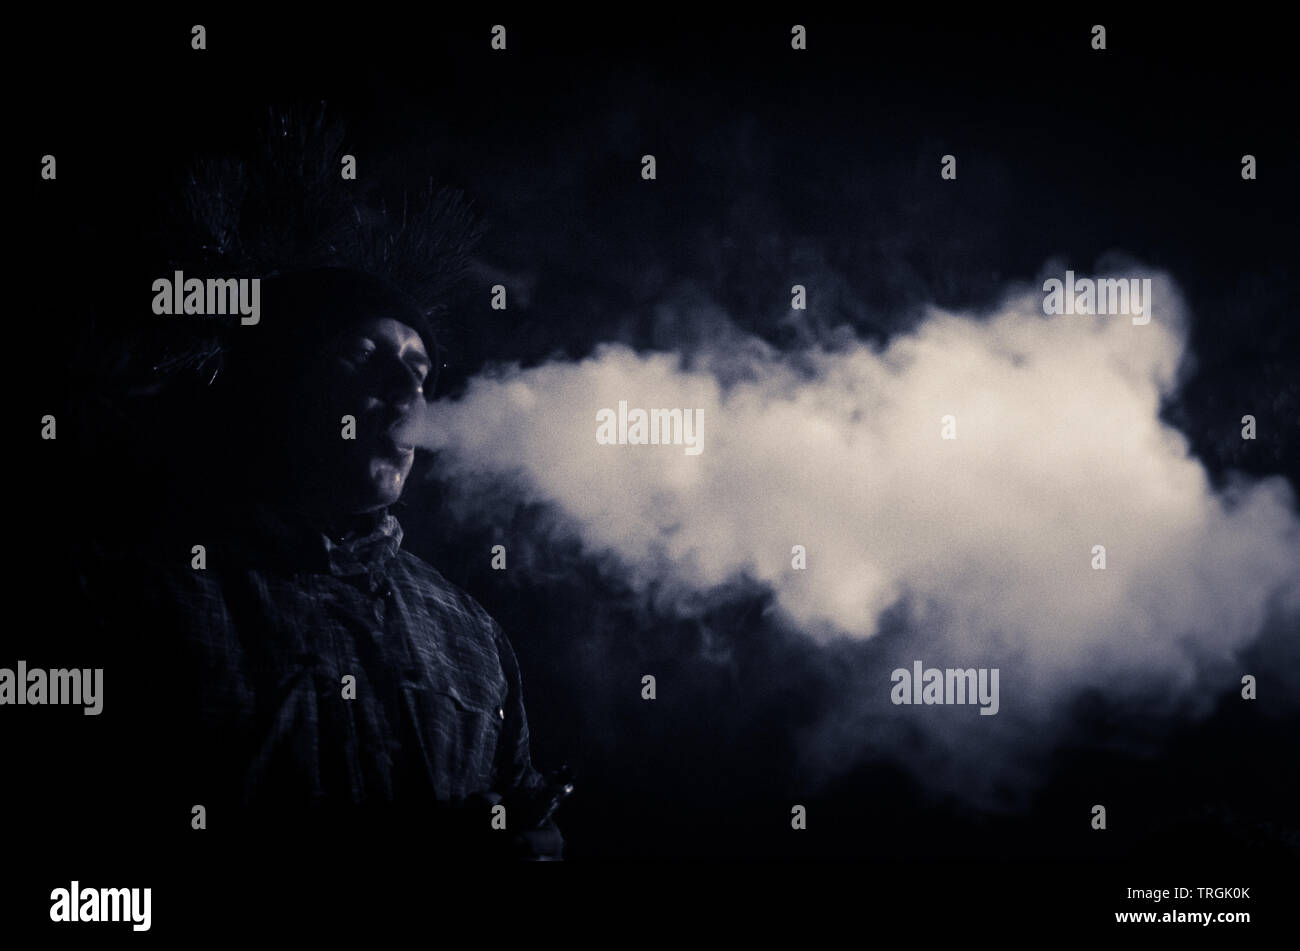 Hot man smoking la nuit de faire un gros effet de fumée en contre-jour Banque D'Images